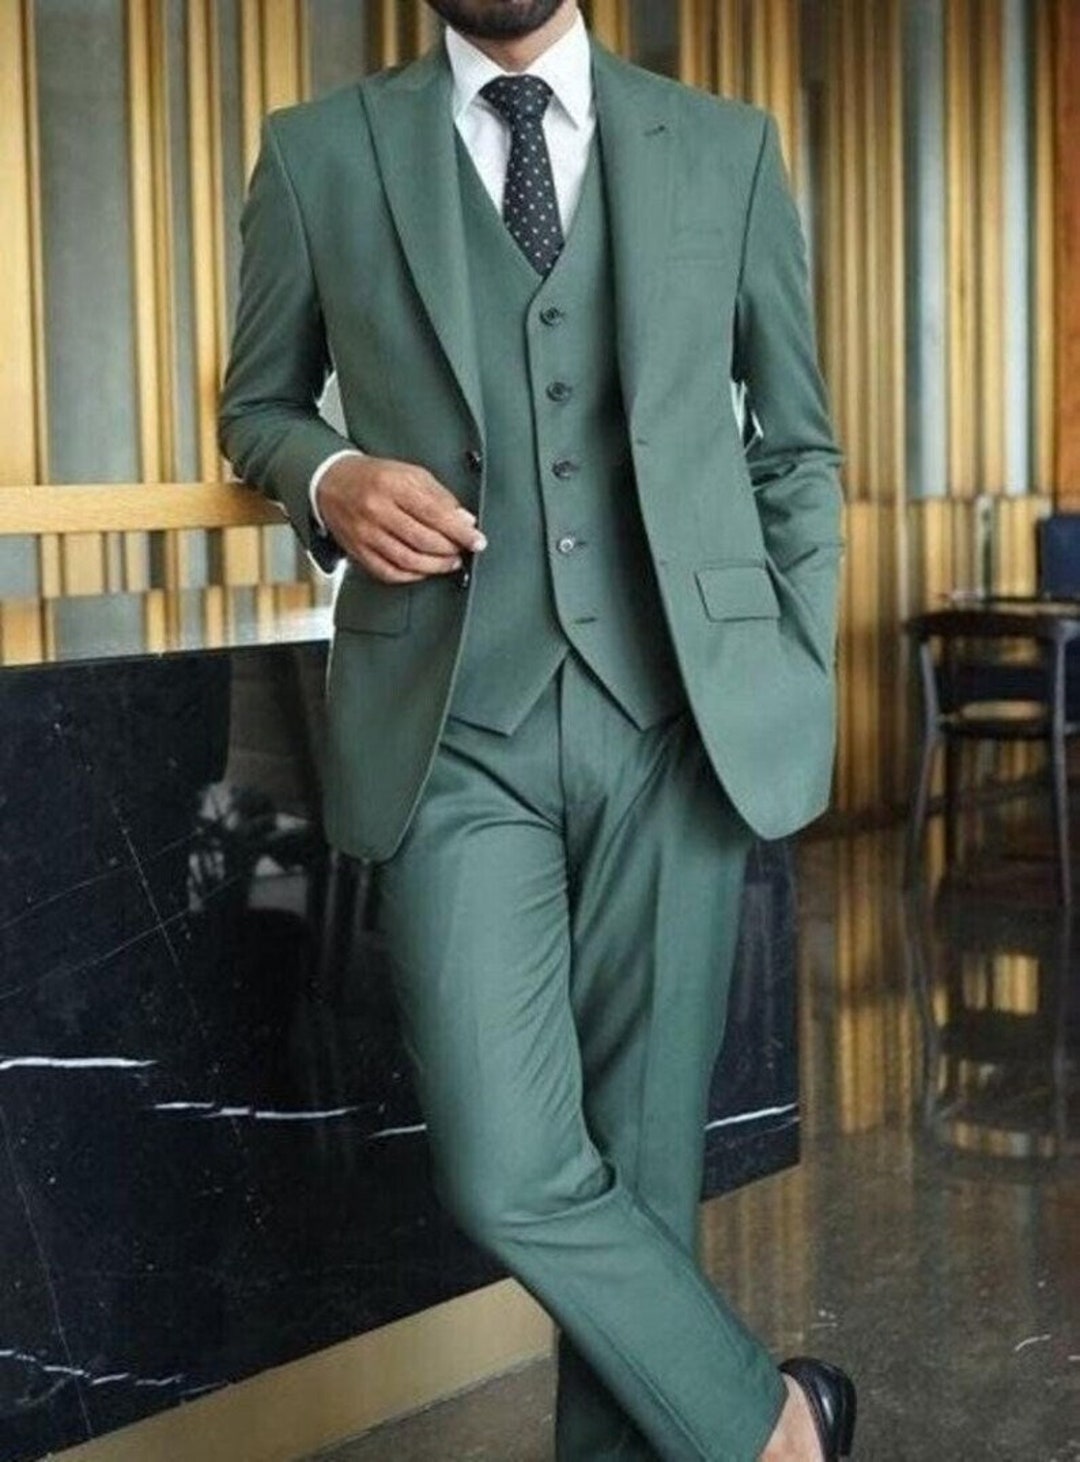 Men Linen Suit Men Suit Linen 2 Piece Linen Suit Beach Fashion